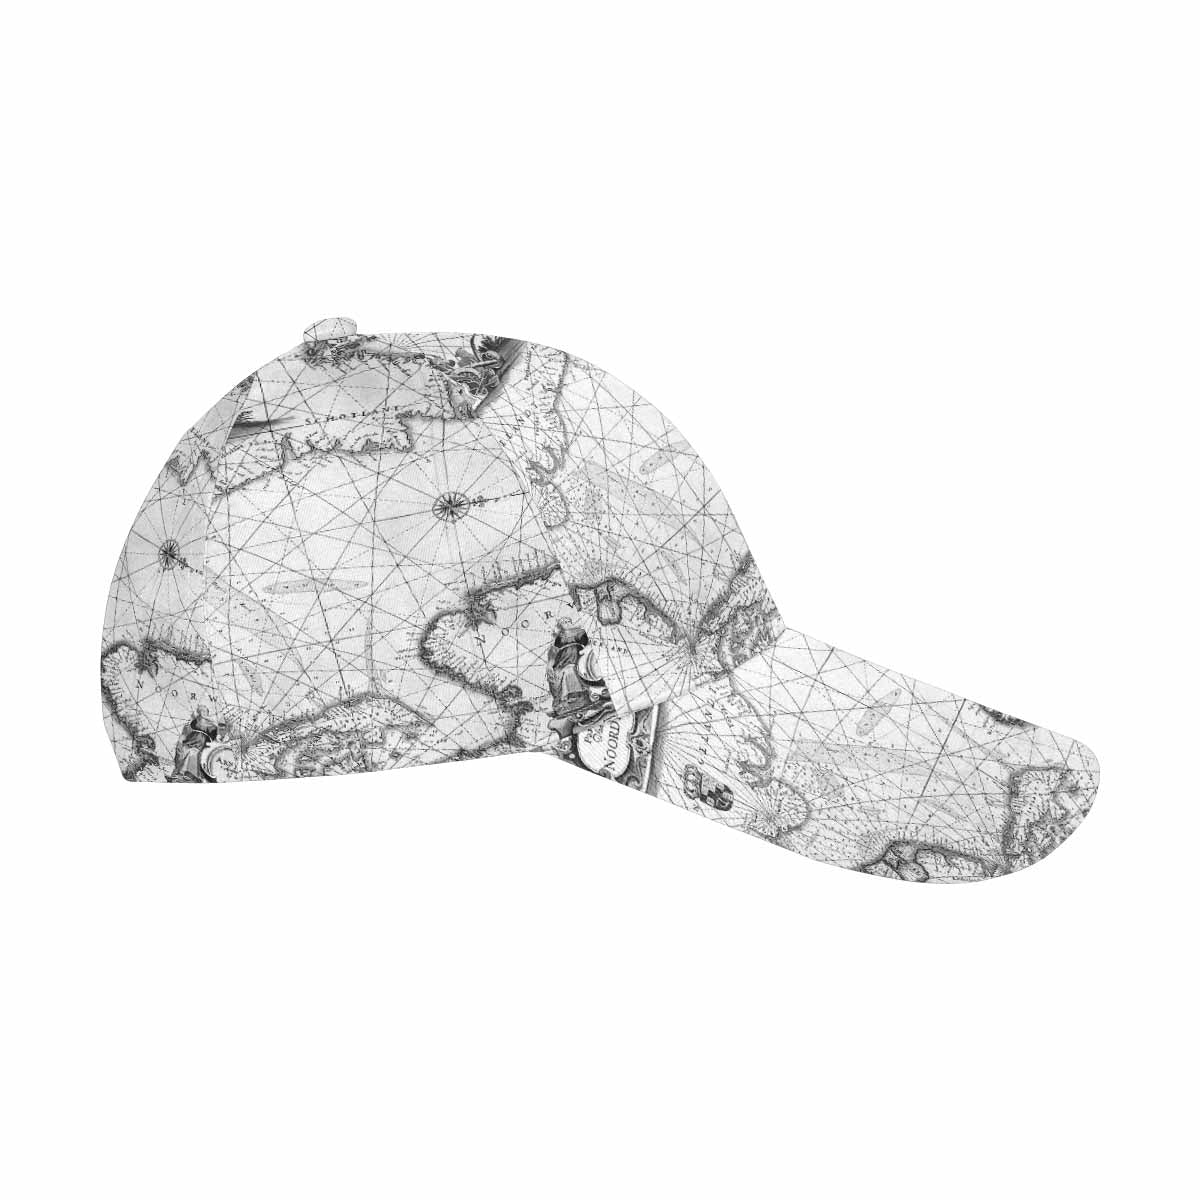 Antique Map design dad cap, trucker hat, Design 5